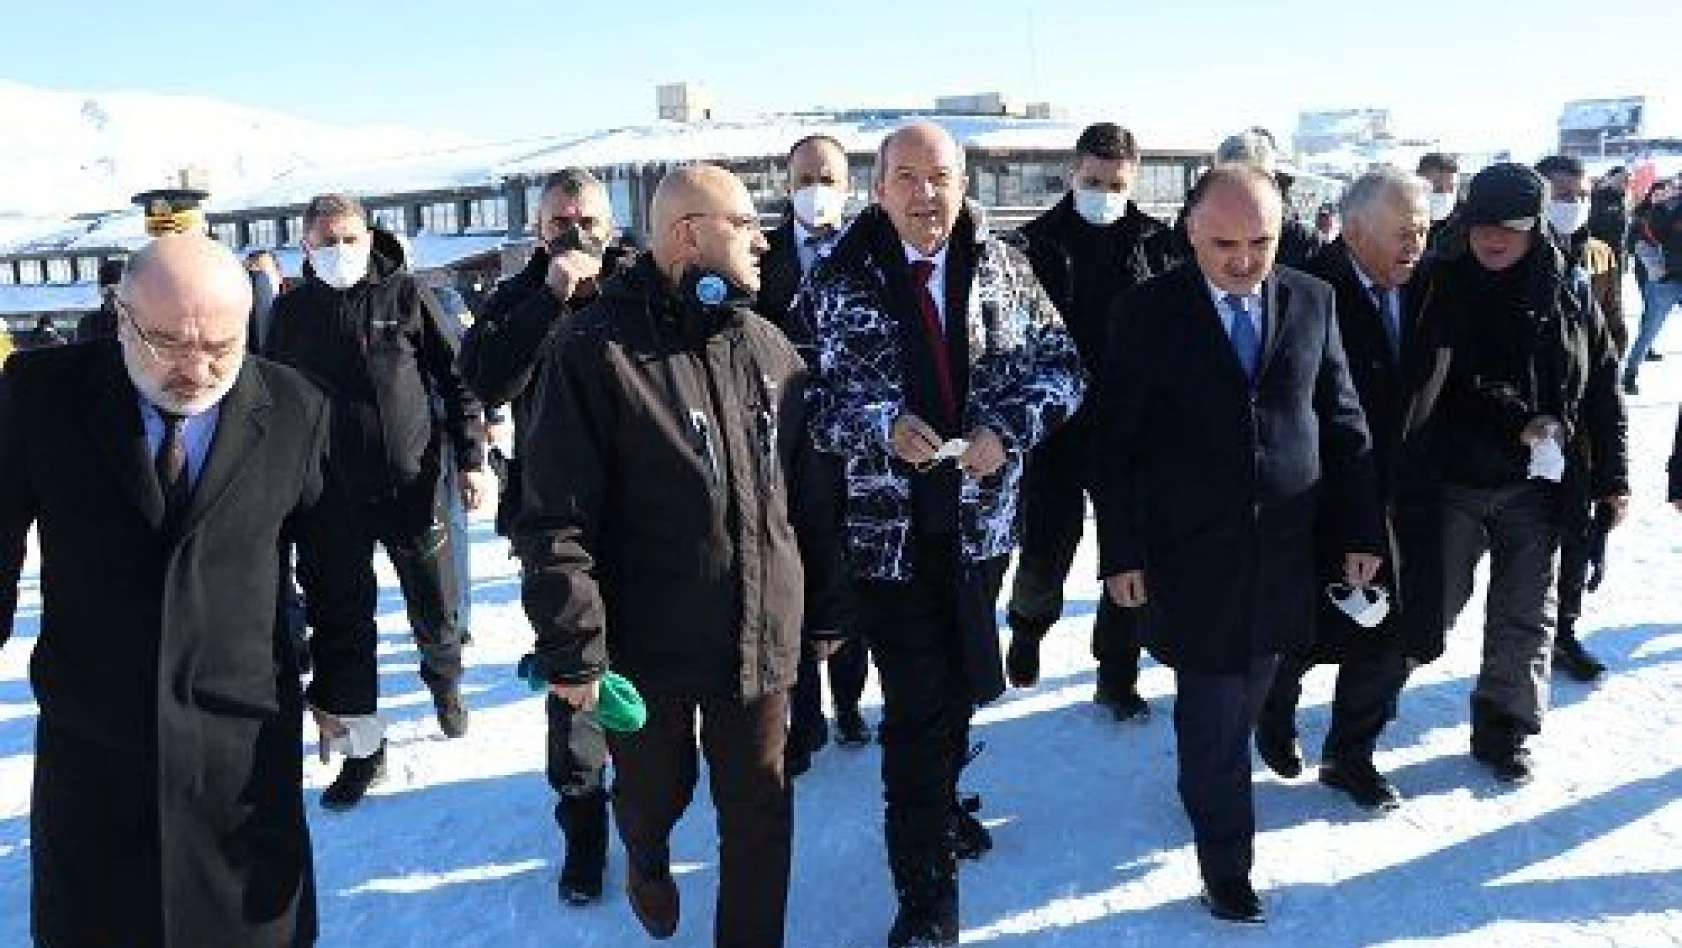 KKTC Cumhurbaşkanı Ersin Tatar Erciyes Kayak Merkezi'ni ziyaret etti